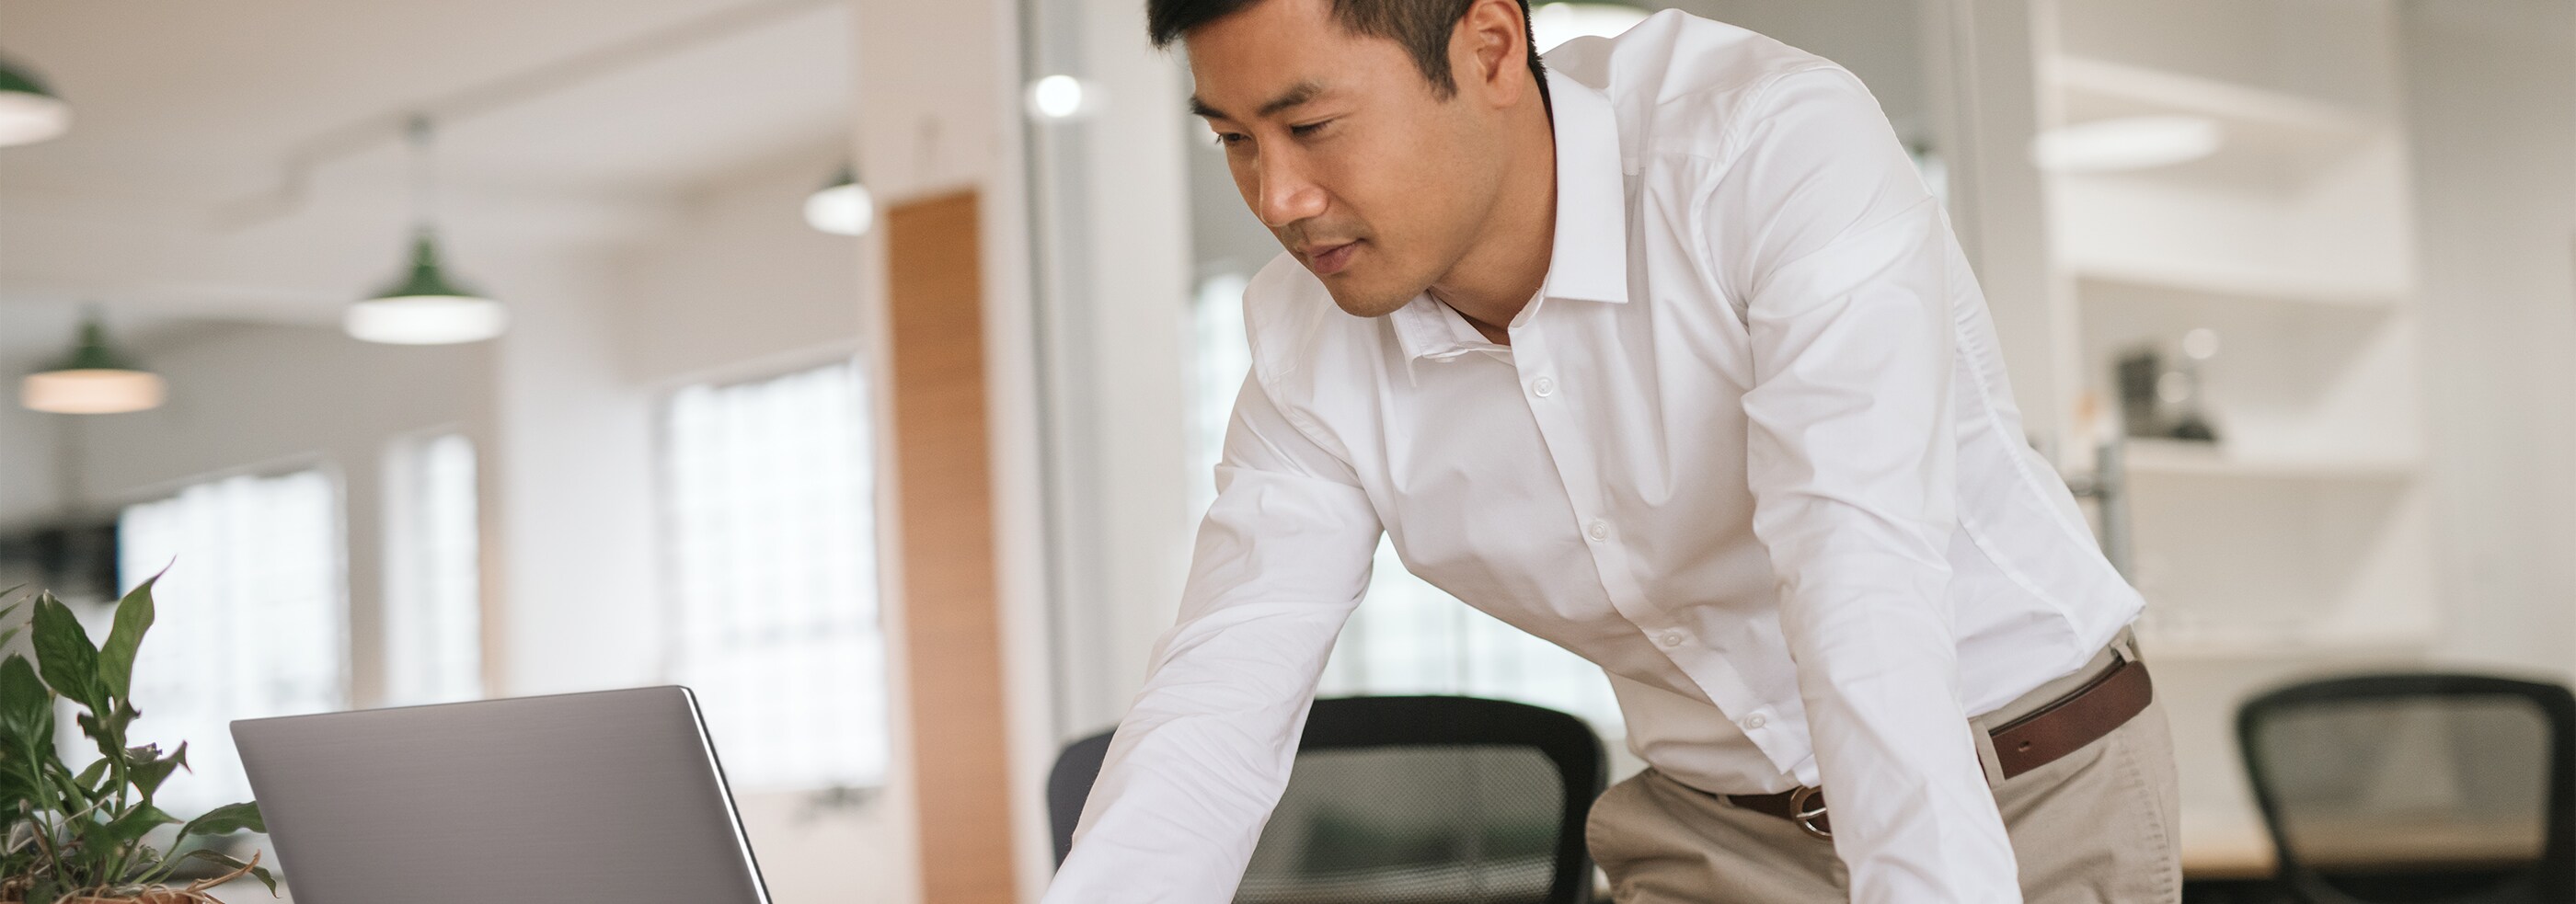 Fokuserad manlig medarbetare som arbetar på sin bärbara dator på ett modernt kontor